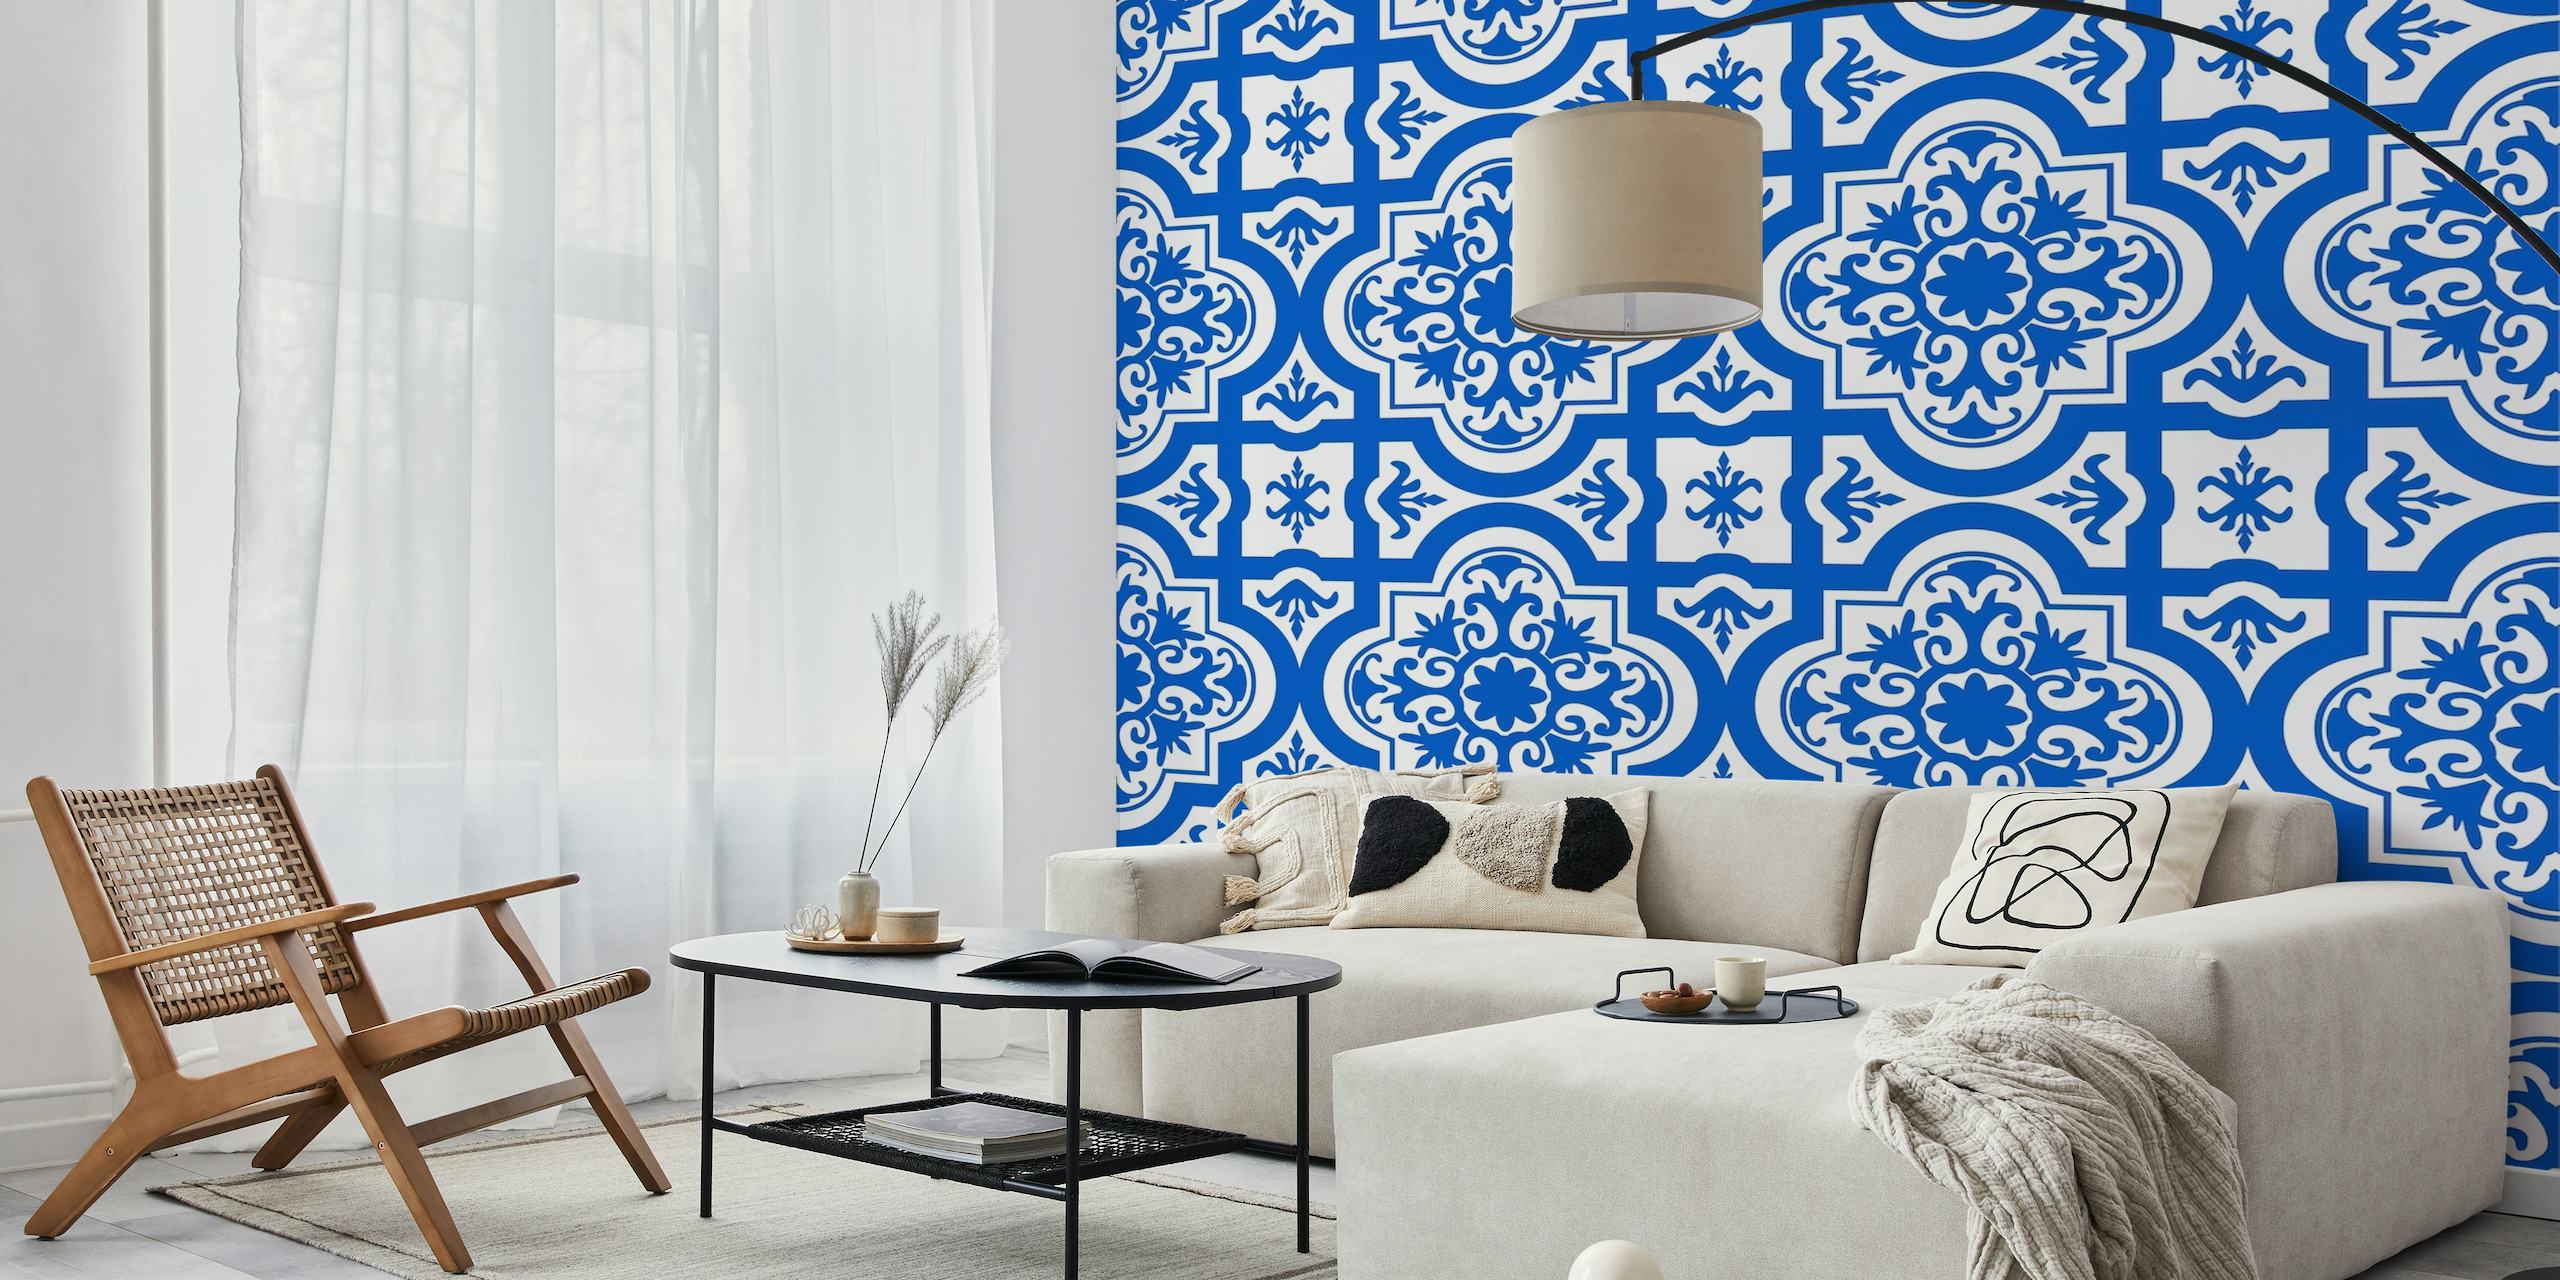 Spanish tile pattern azure blue white wallpaper